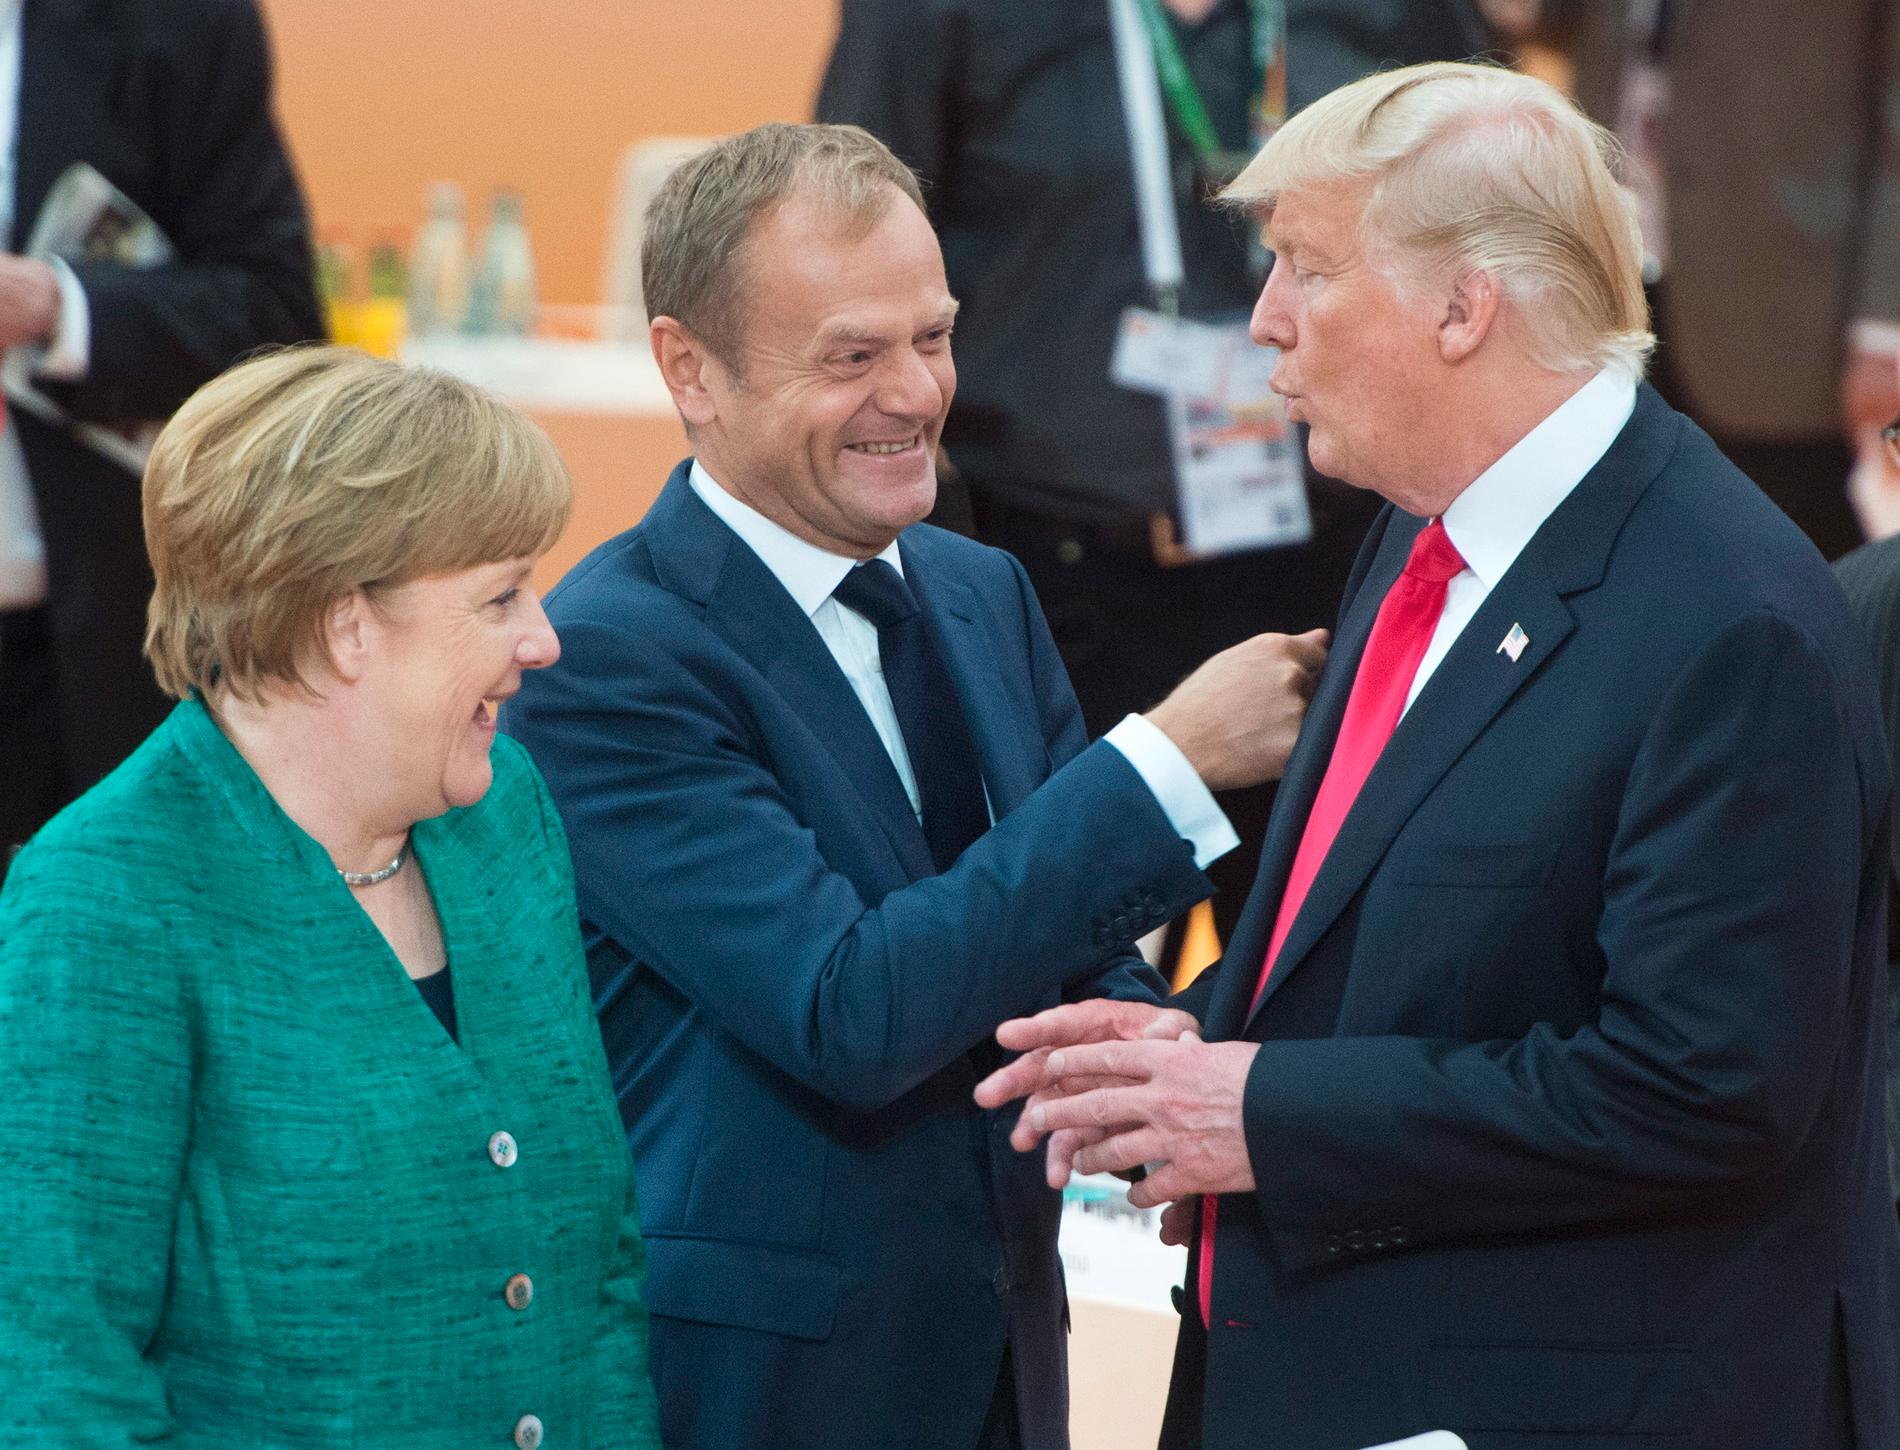 Tysklands förbundskansler Angela Merkel, EU:s permanente rådsordförande Donald Tusk och USA:s president Donald Trump vid fjolårets G20-möte i tyska Hamburg.